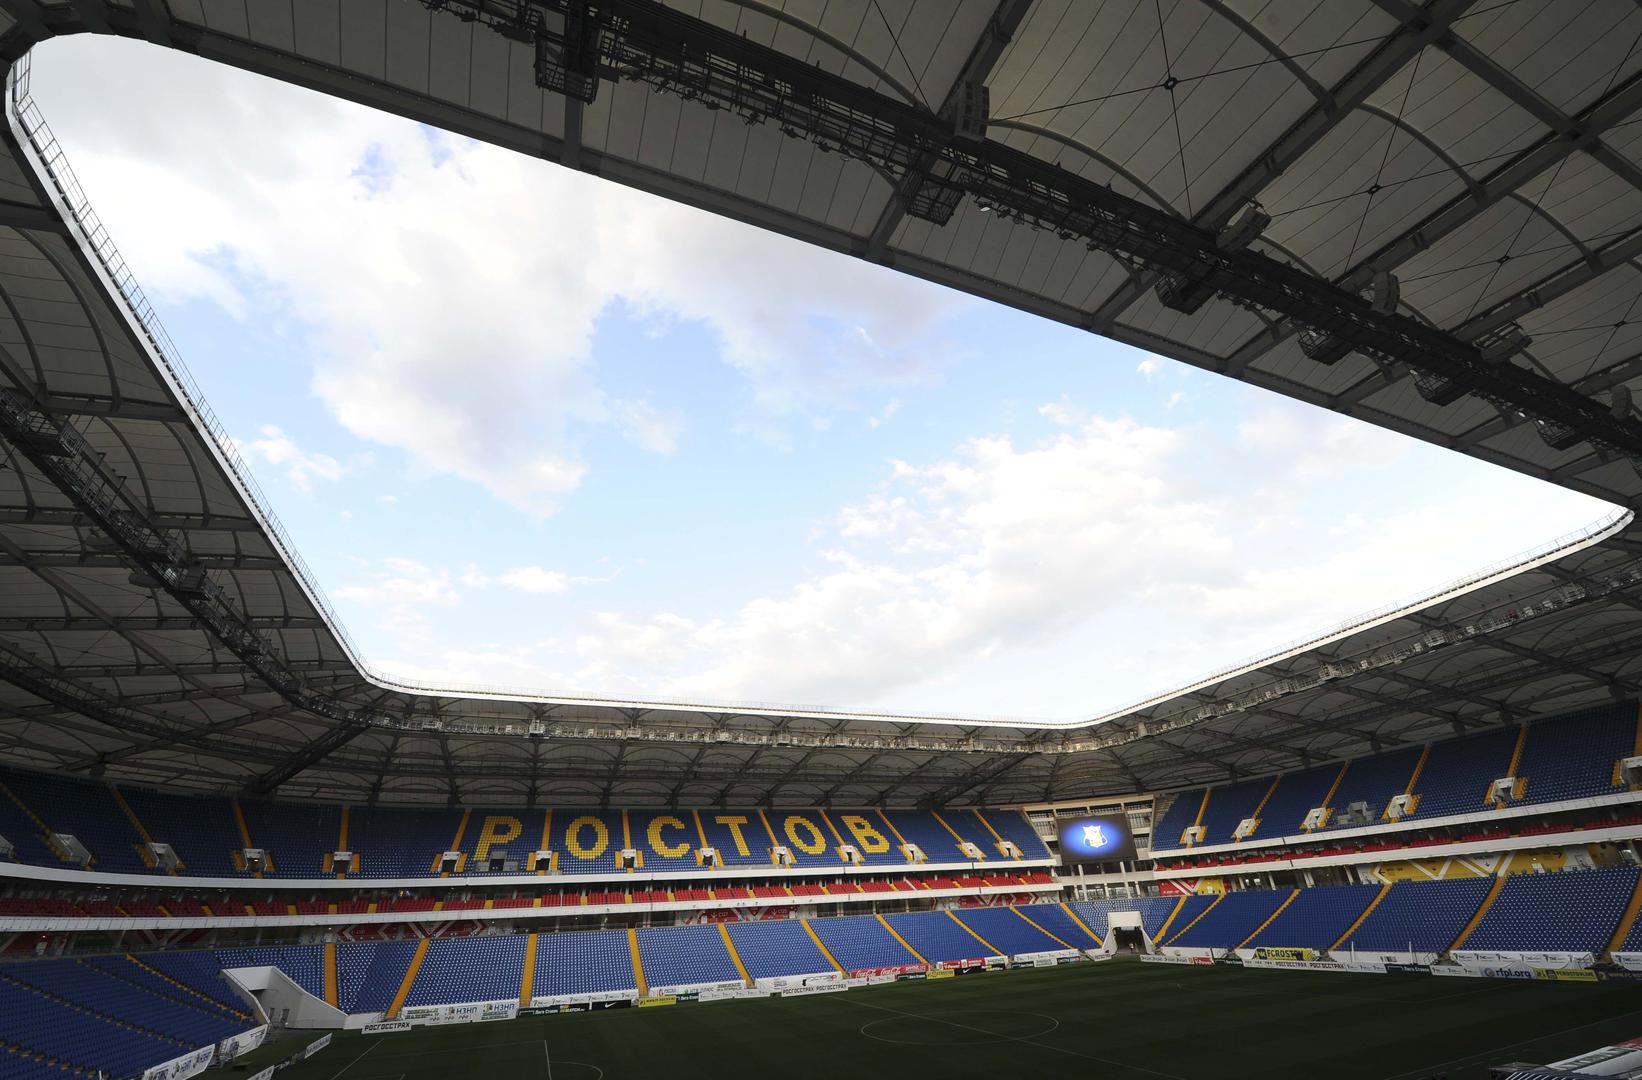 Nakon što završi SP, na stadionu će igrati ruski prvoligaš Rostov, a kapacitet će se smanjiti na 25.000 mjesta.